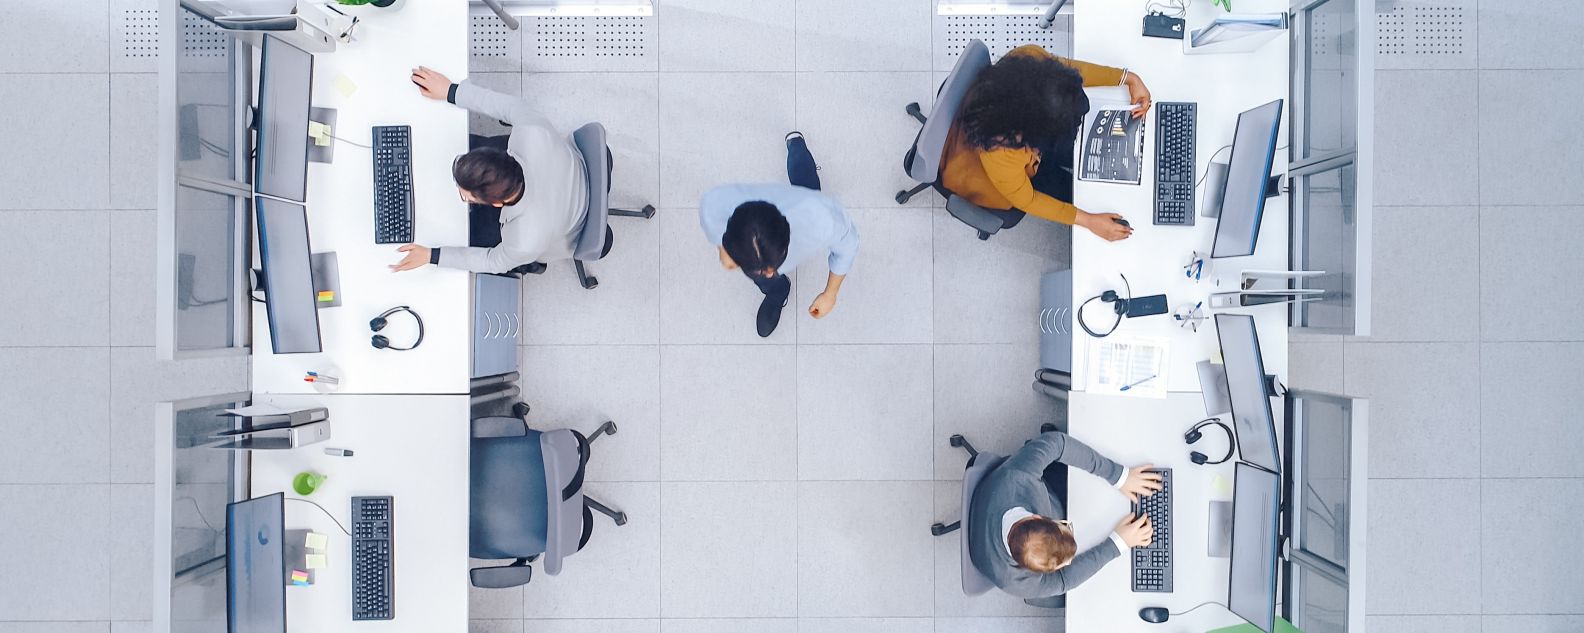 Vista aérea de escritório compartilhado, com trabalhadores em mesas individuais